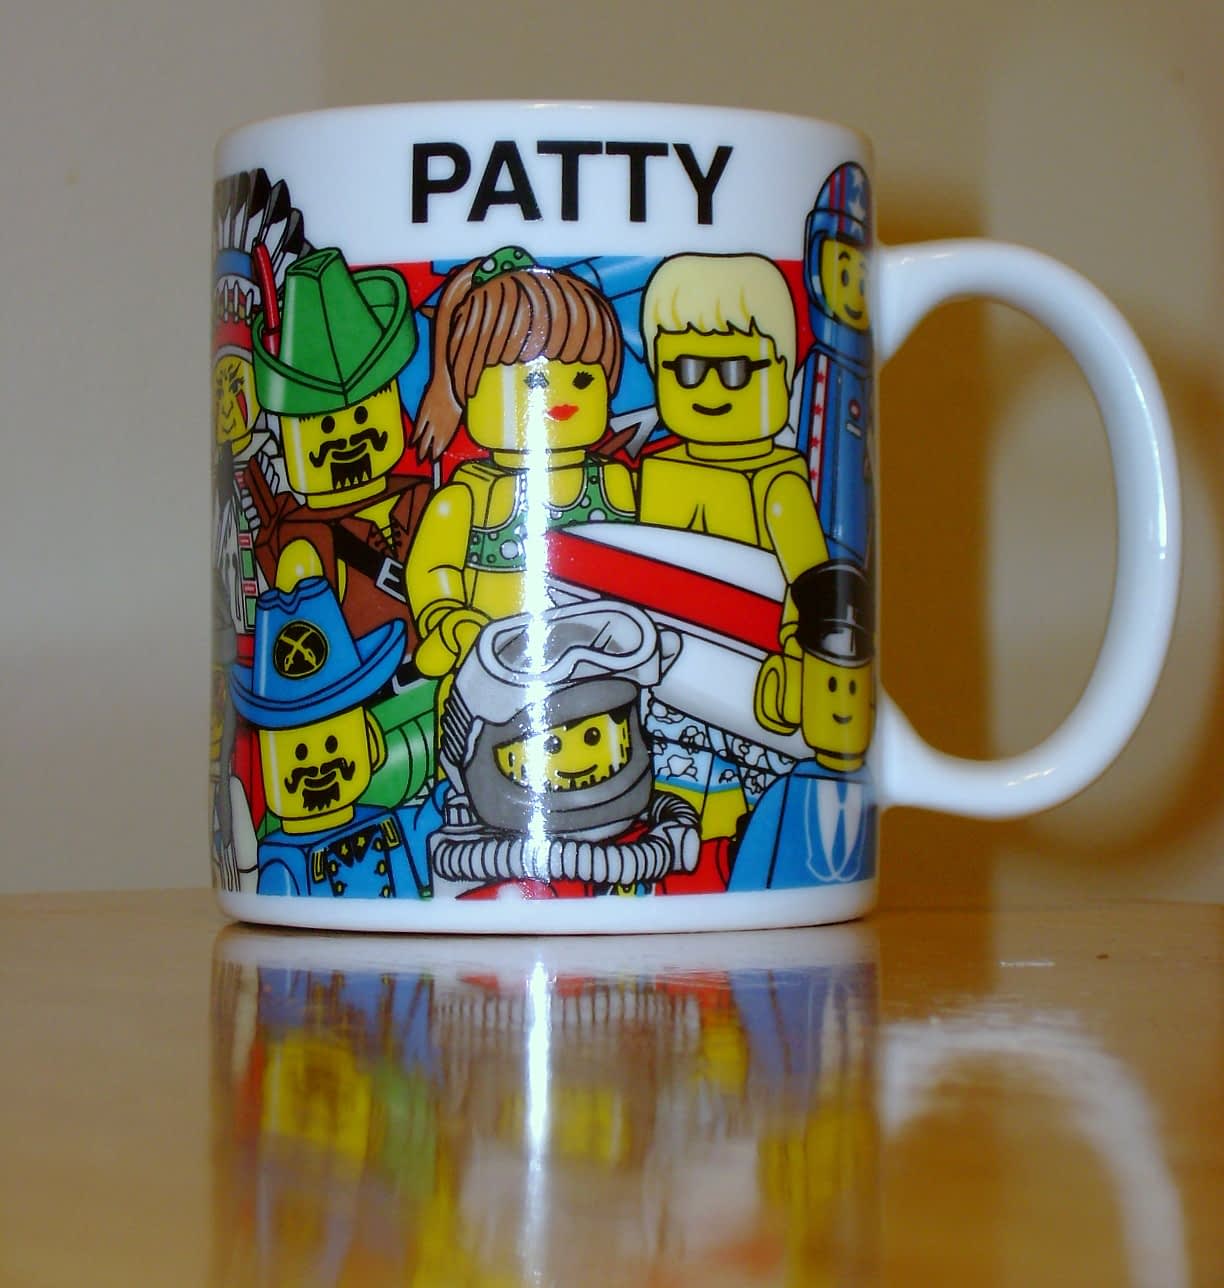 The PATTY Mug